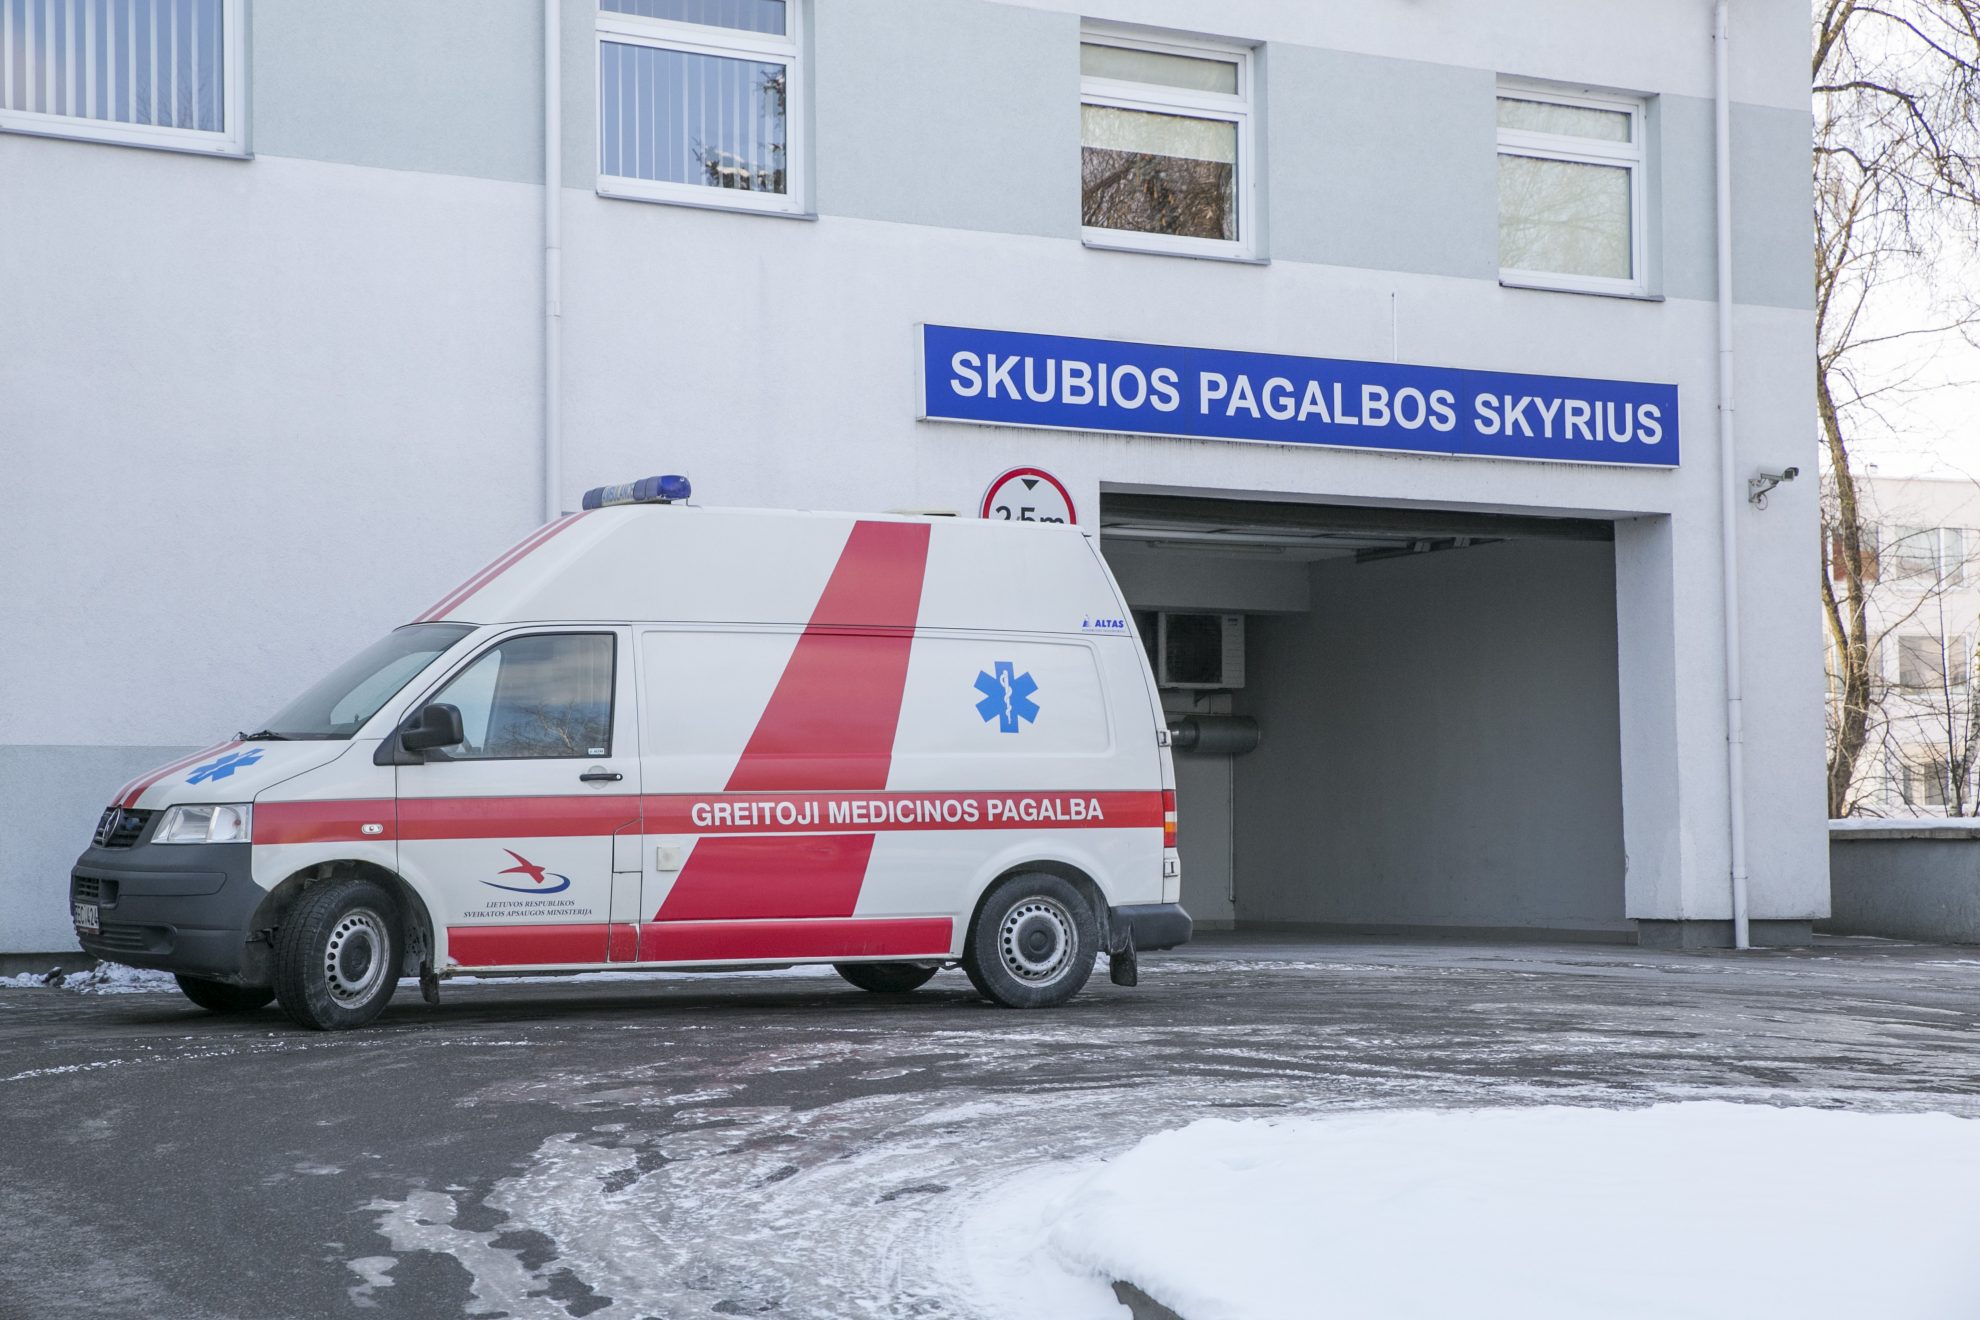 Sekmadienio naktį Panevėžio rajone jaunuolių kelionė automobiliu baigėsi ligoninėje.